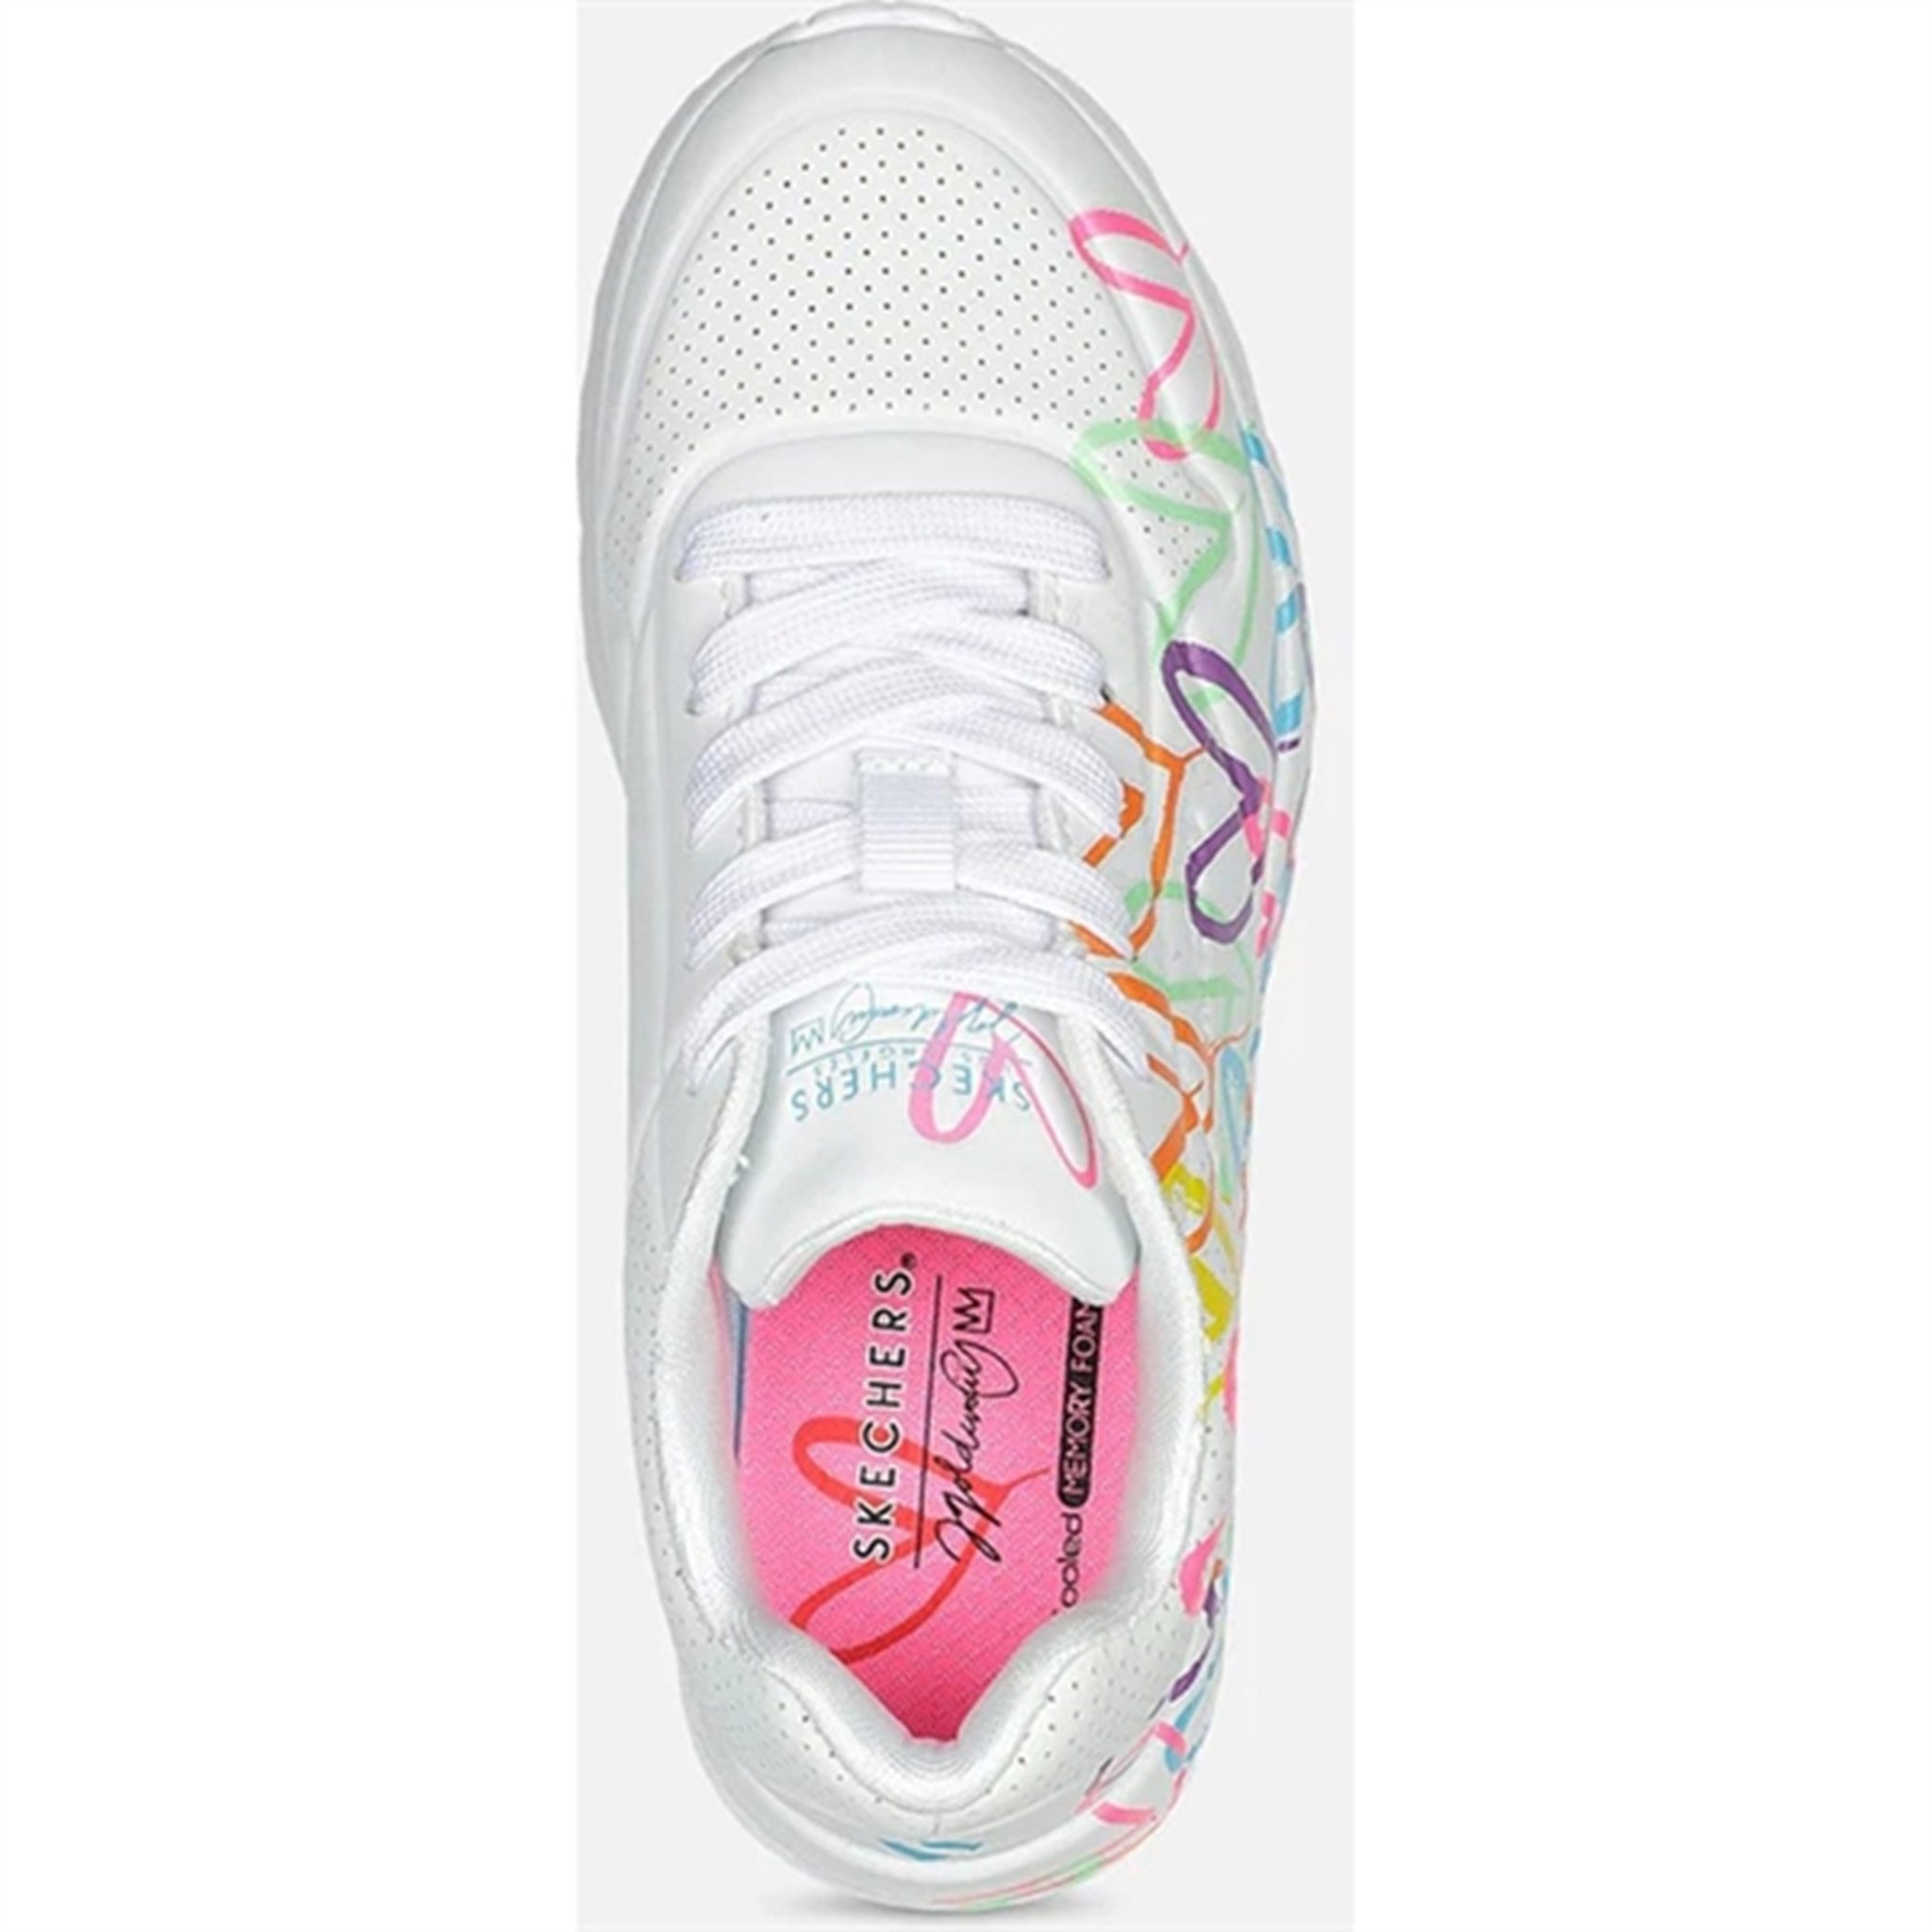 Skechers Girls Uno Sneakers Lite Spread The Love White Multicolor 3